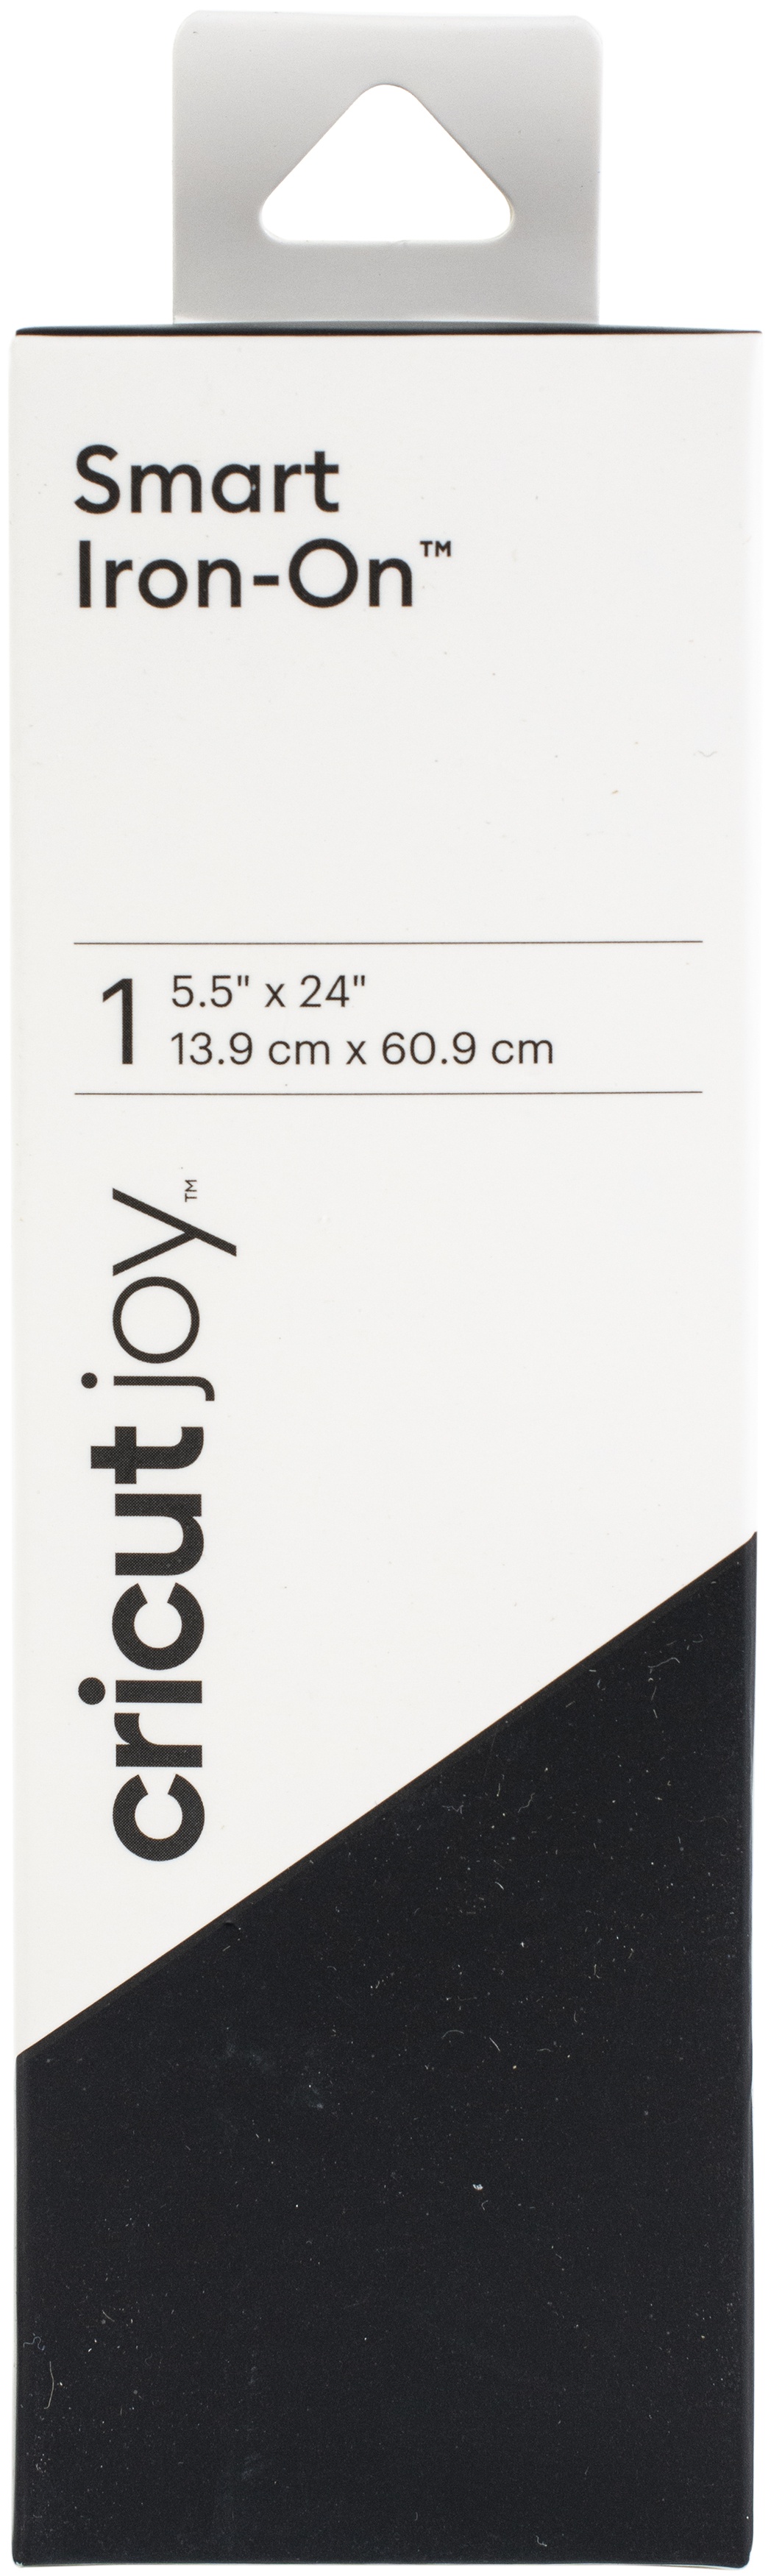 Cricut Joy Smart Iron-On Vinyl 5.5X24 Roll-Black